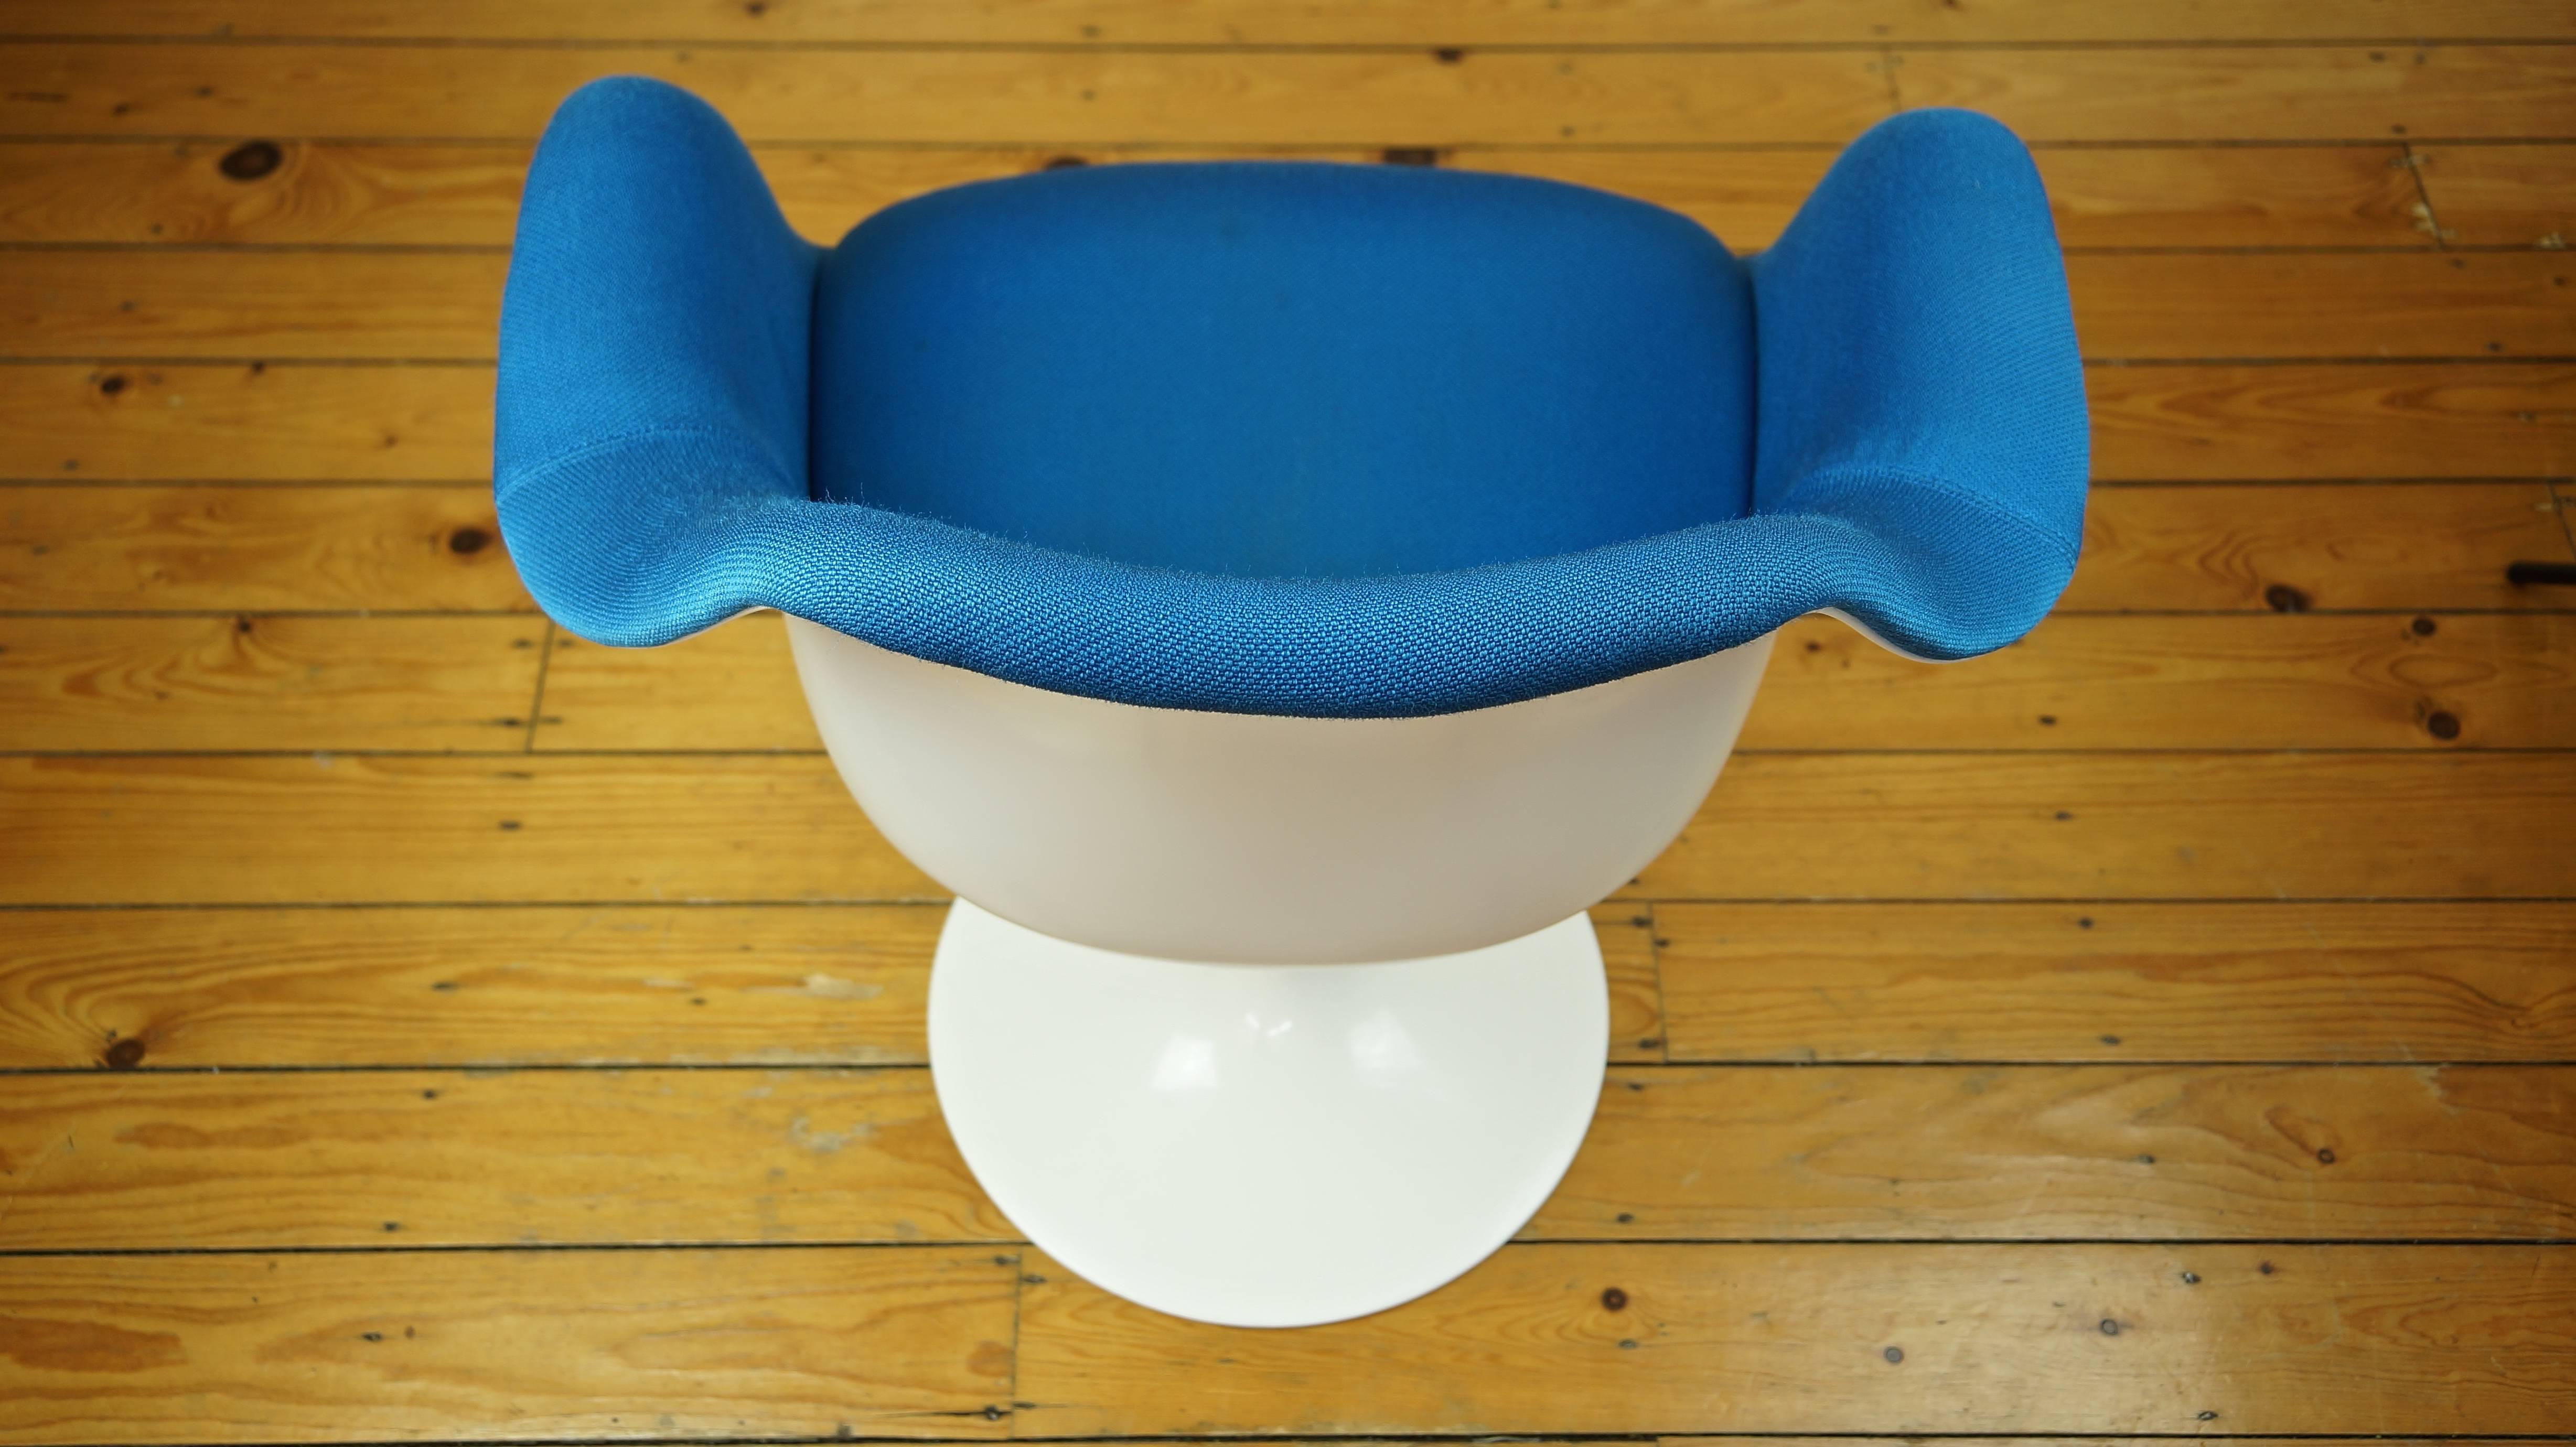 American Vintage Tulip Chair / Armchair by Eero Saarinen for Knoll, Blue Upholstery